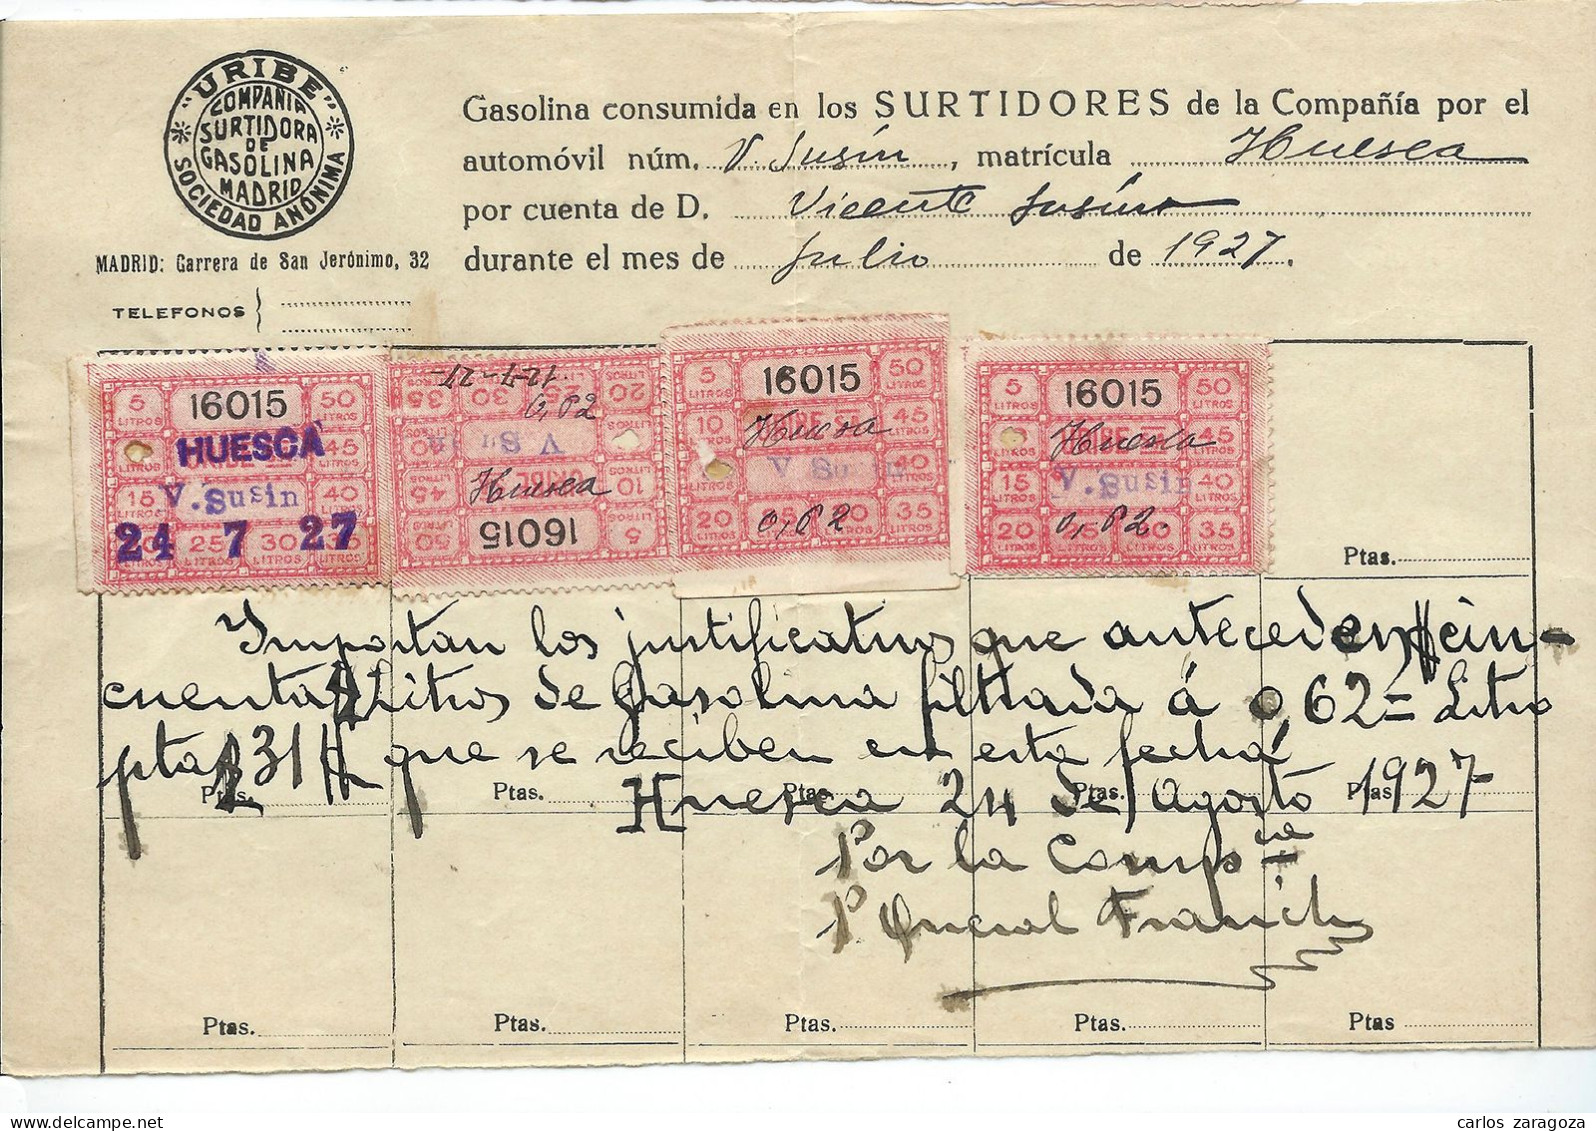 ESPAÑA 1927—Sellos Justificantes De Gasolina En Recibo URIBE SA—Docum. Histórico Anterior A CAMPSA - España